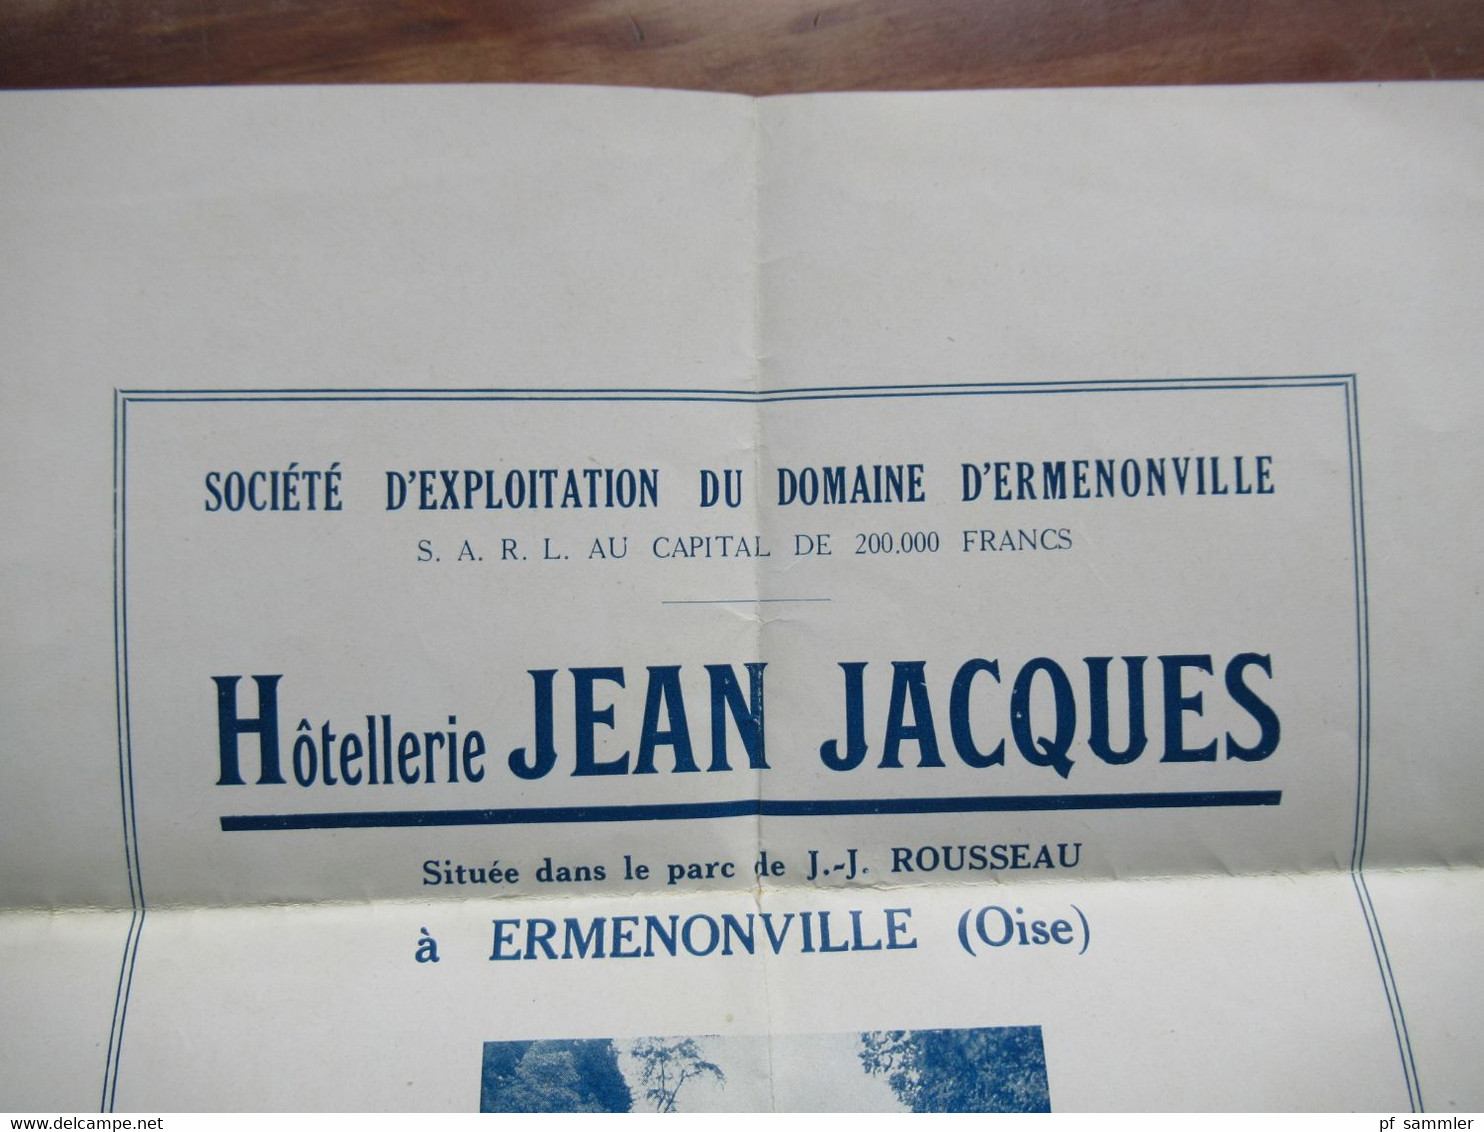 Hotel Werbung Plakat Un Joyau de l'Ile de France Ermenonville / Hotellerie Jean Jacques / Parc J.J. Rousseau ca. 1920